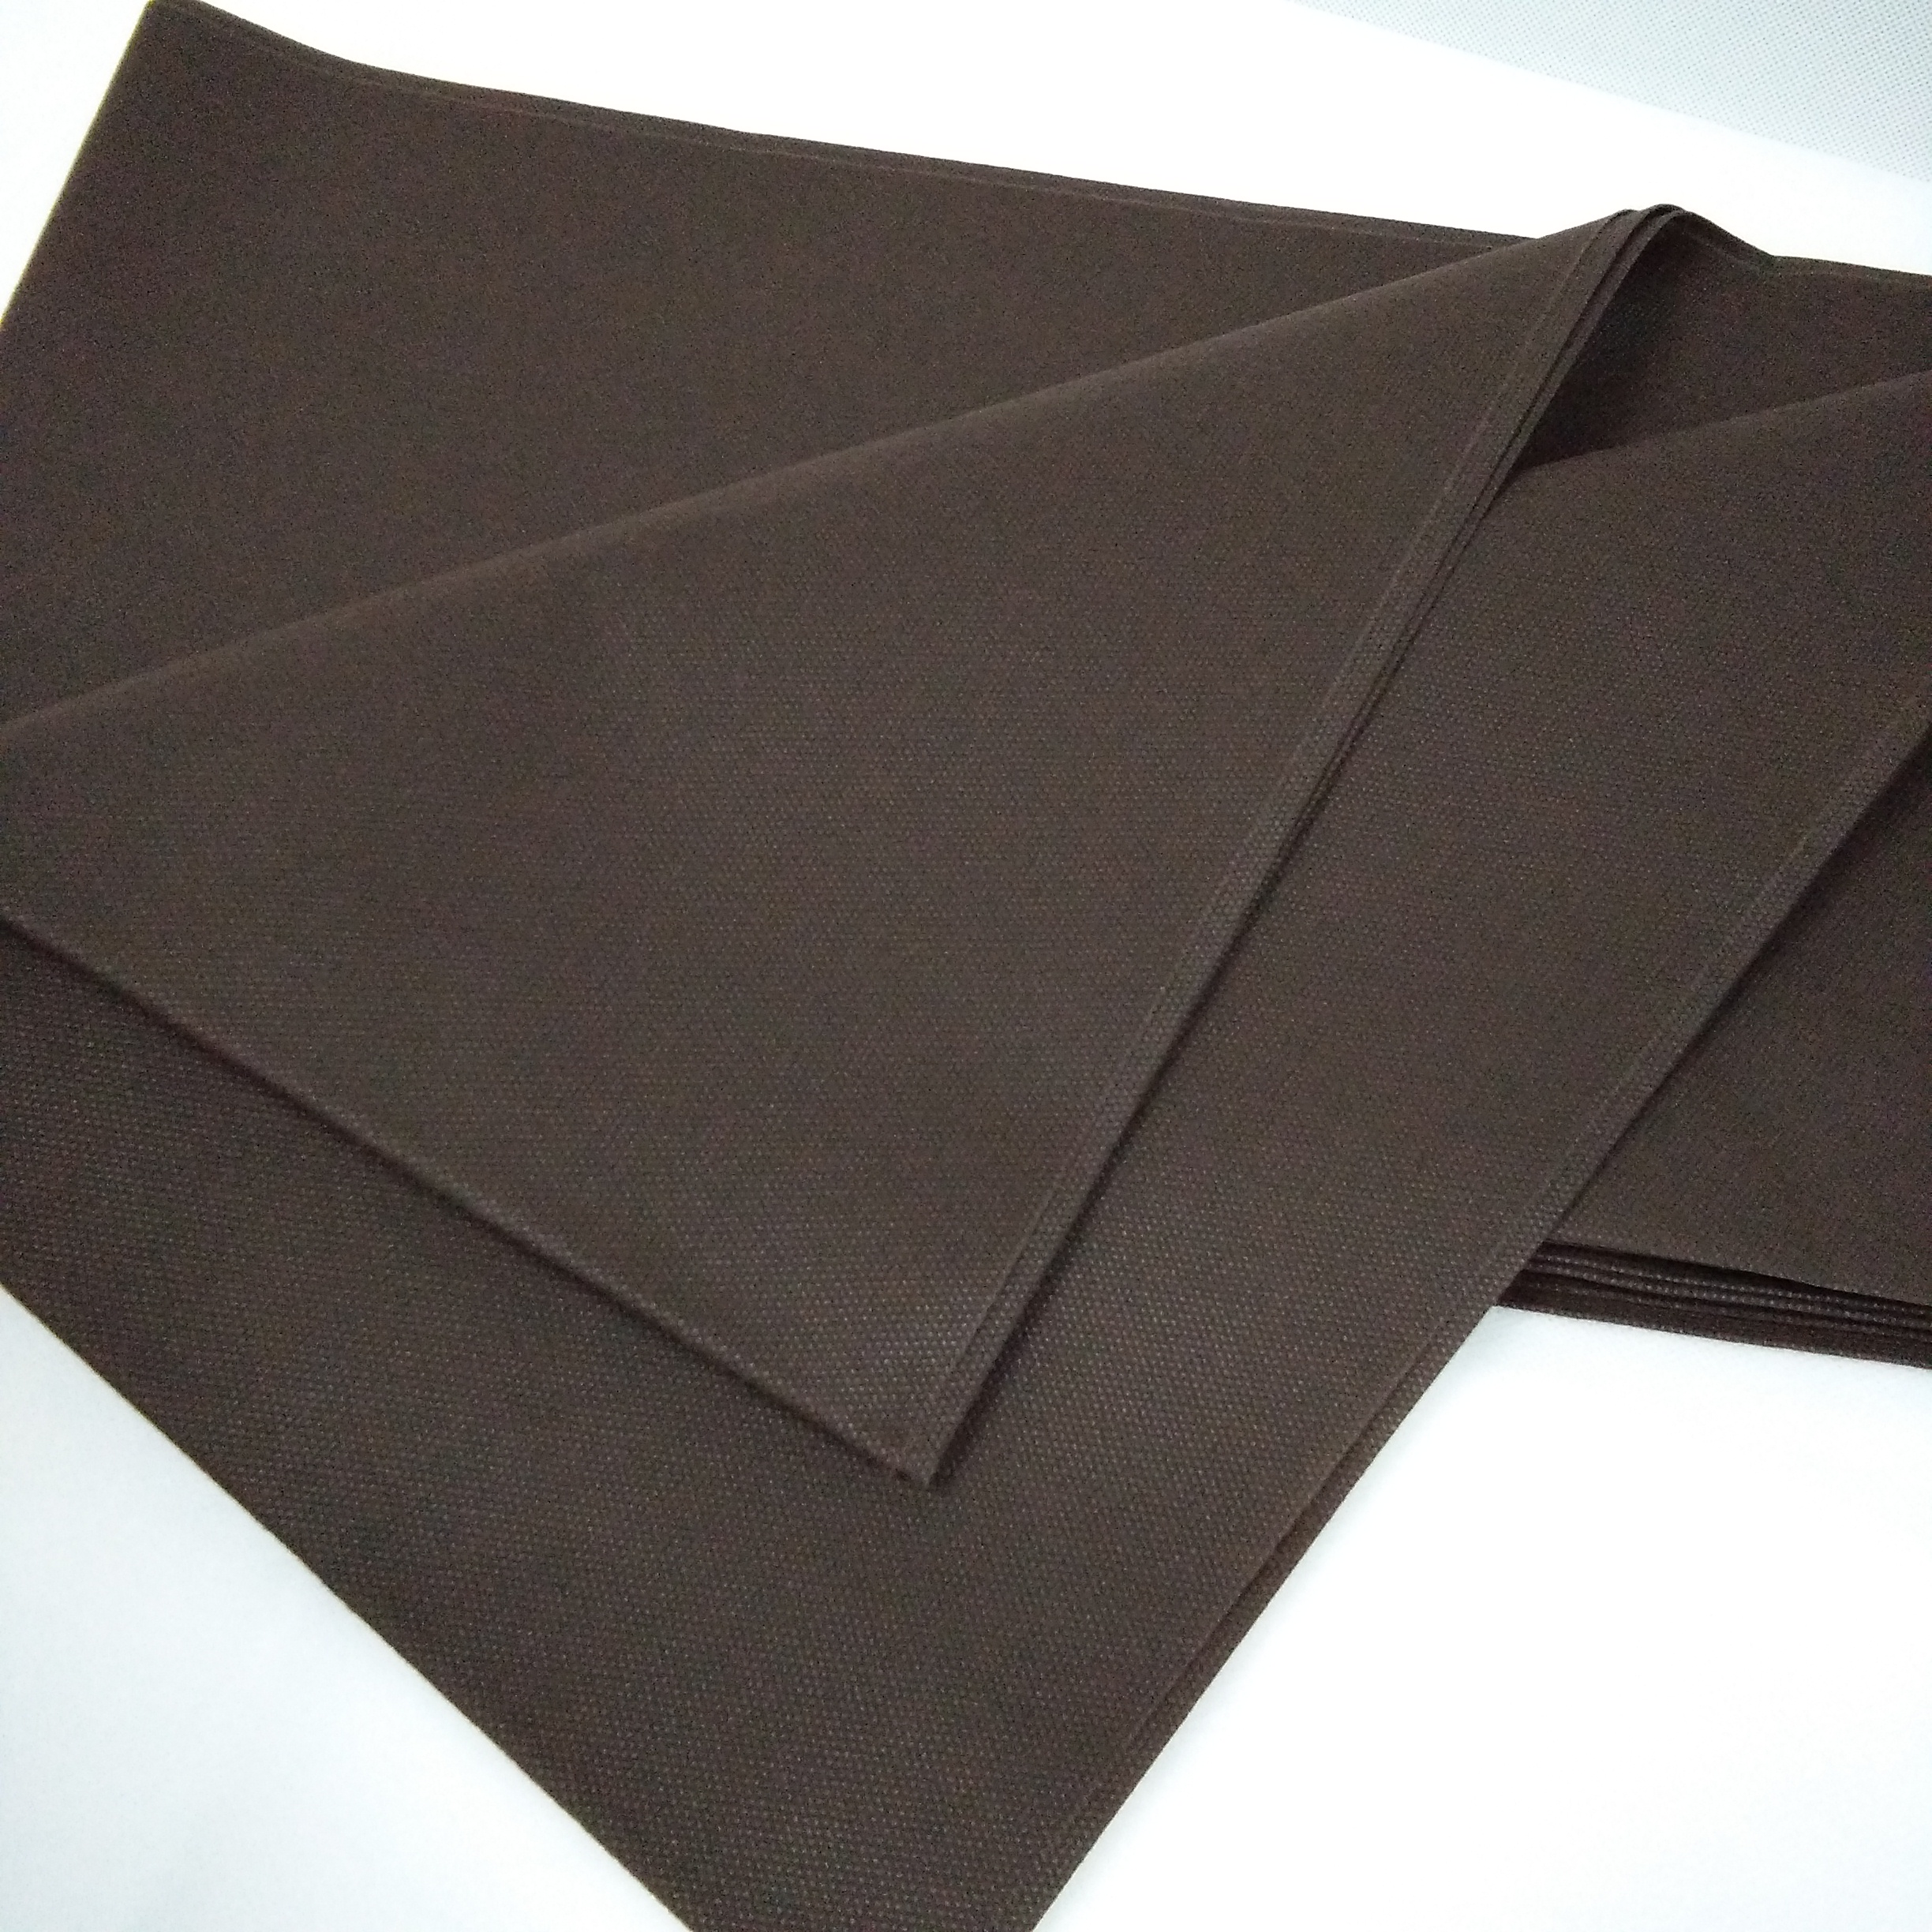 无纺布桌布 100% 聚丙烯纺粘每切桌布